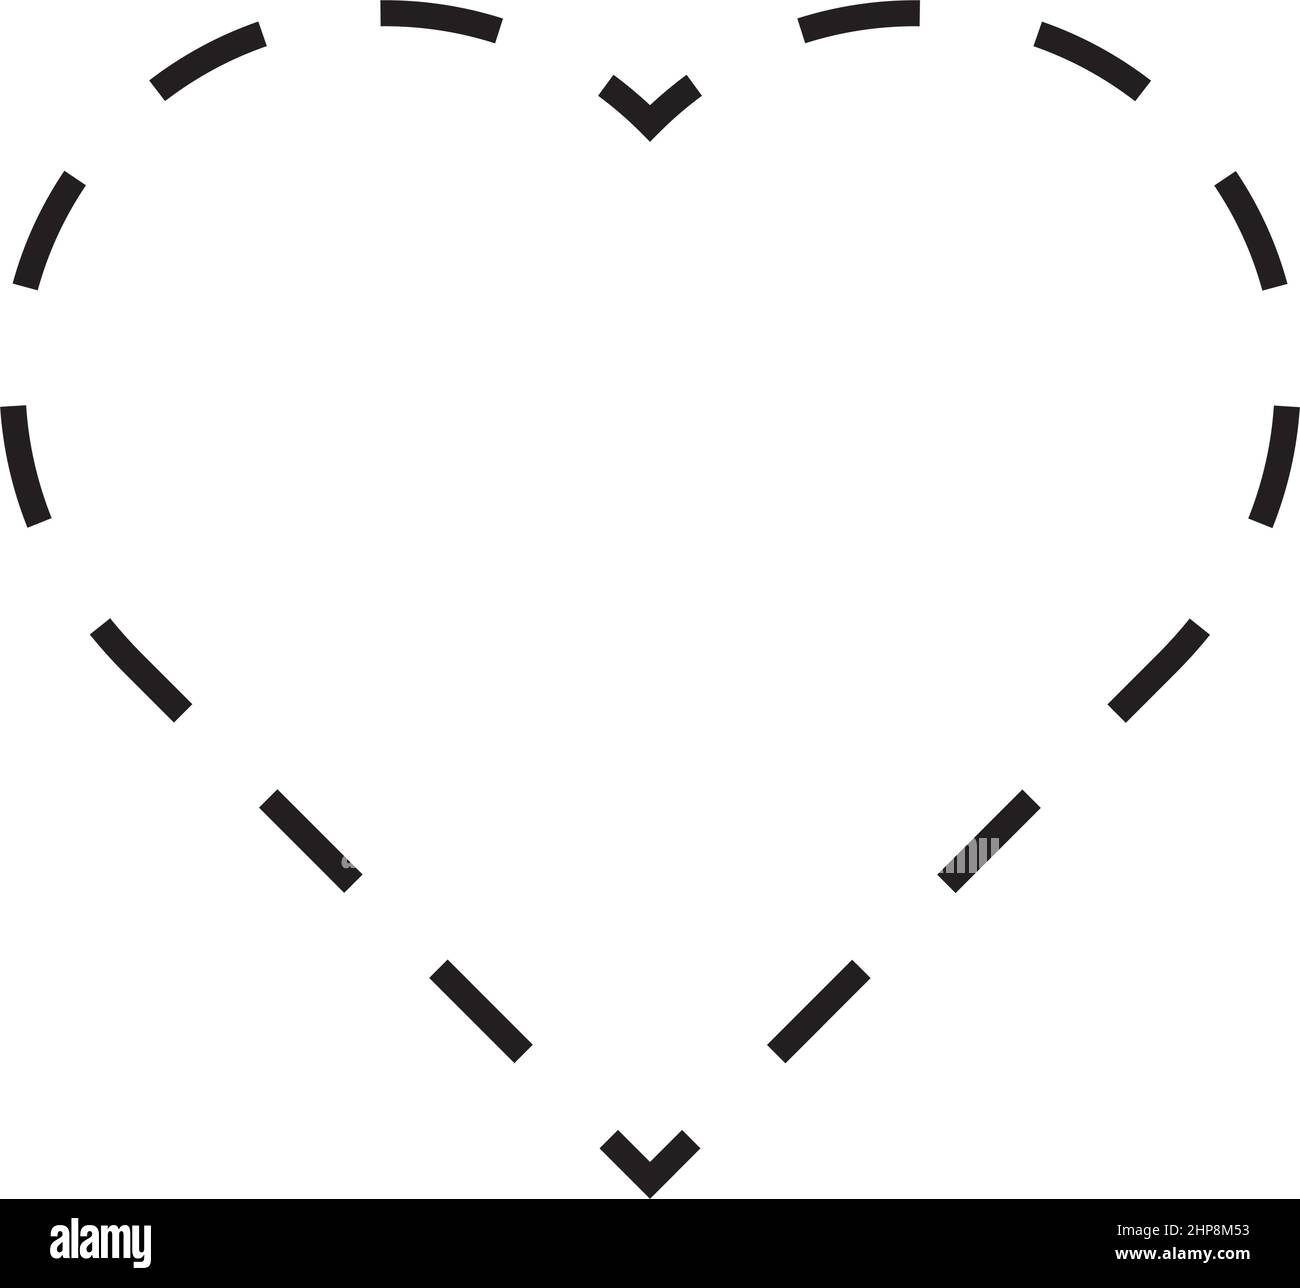 Vektor mit gestrichelten Symbolen in Herzform für kreatives grafisches Design ui-Element in einer Piktogramm-Illustration Stock Vektor